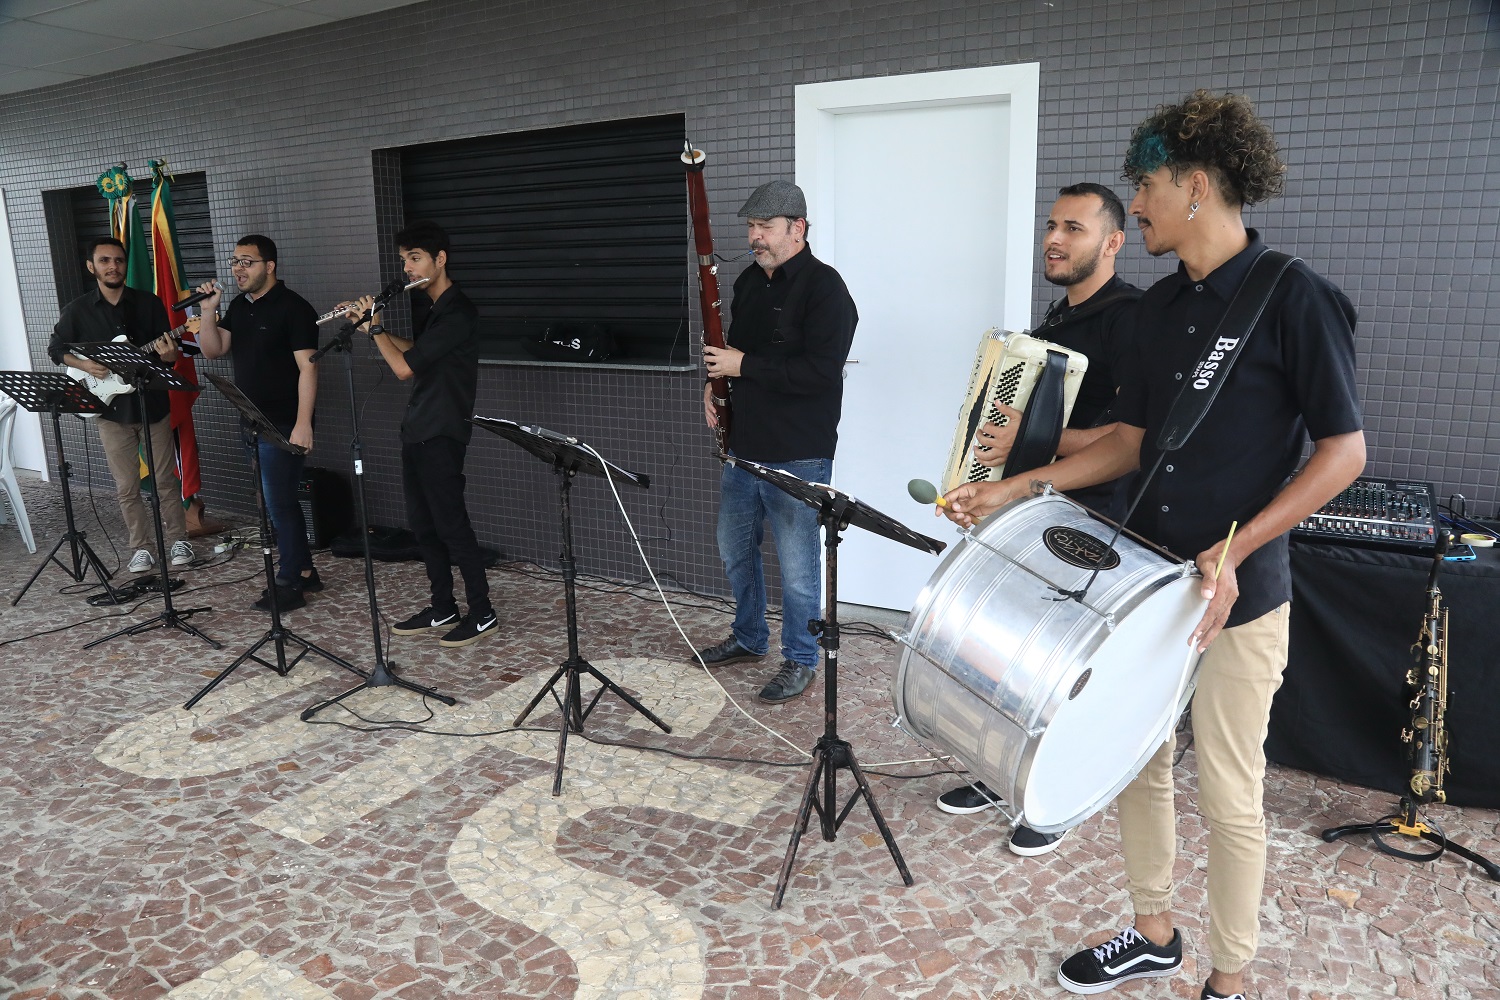 Solenidade contou também com apresentação musical. (foto: Adilson Andrade/Ascom UFS)